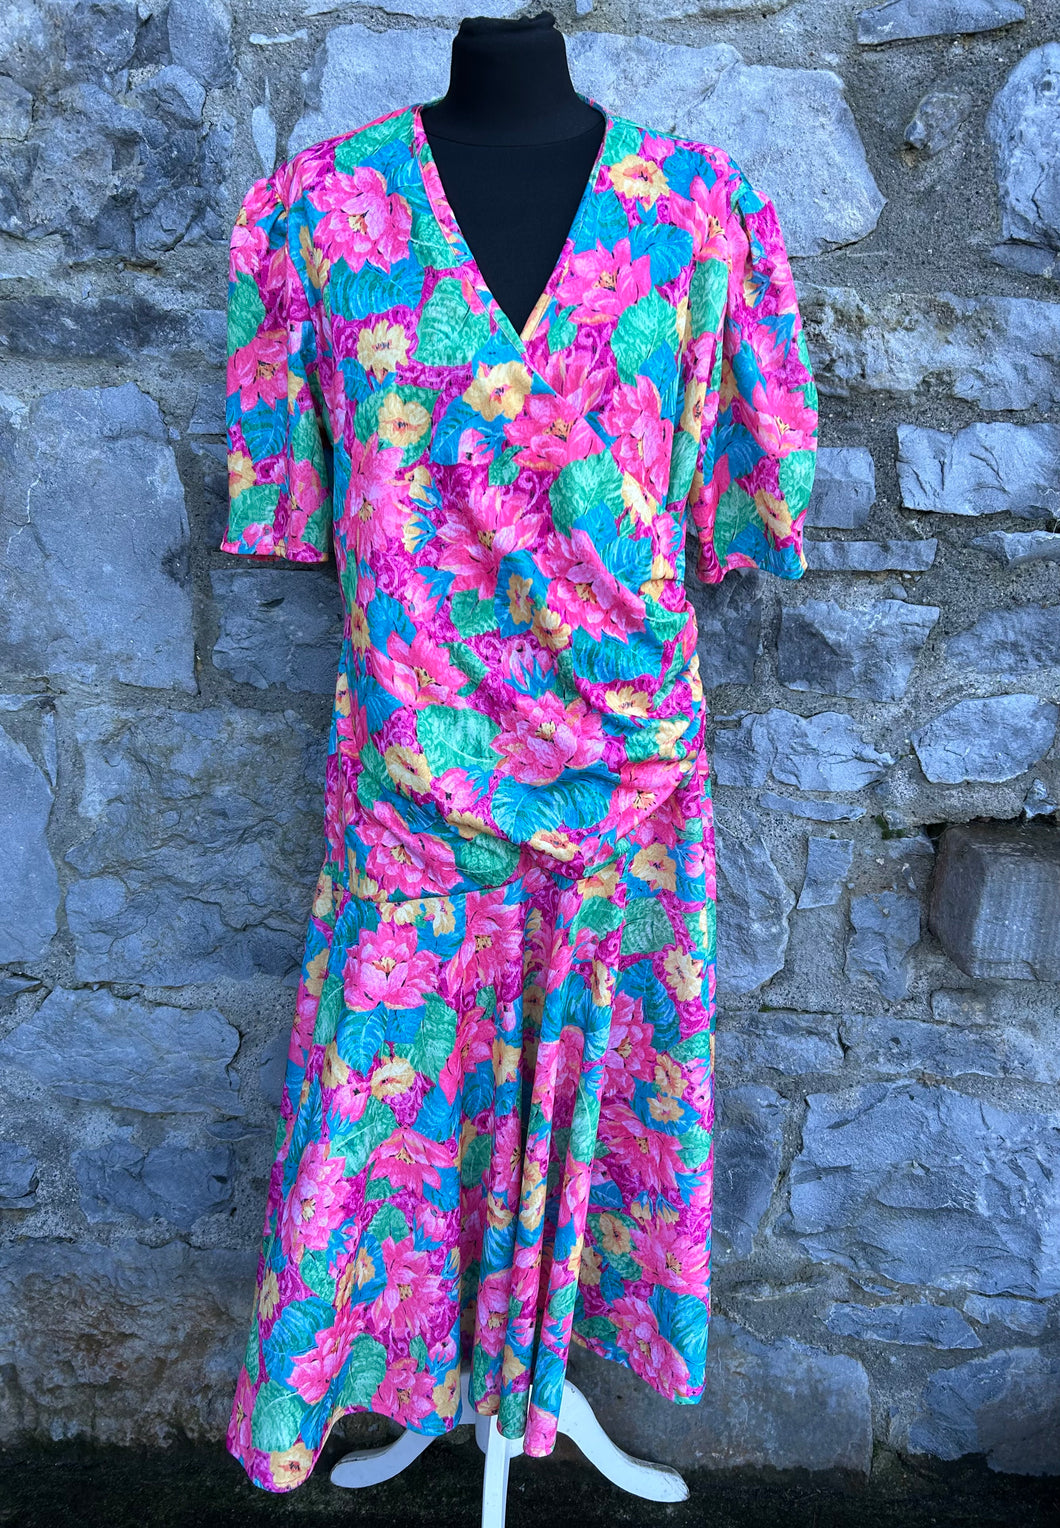 80s pink floral dress uk 14-16